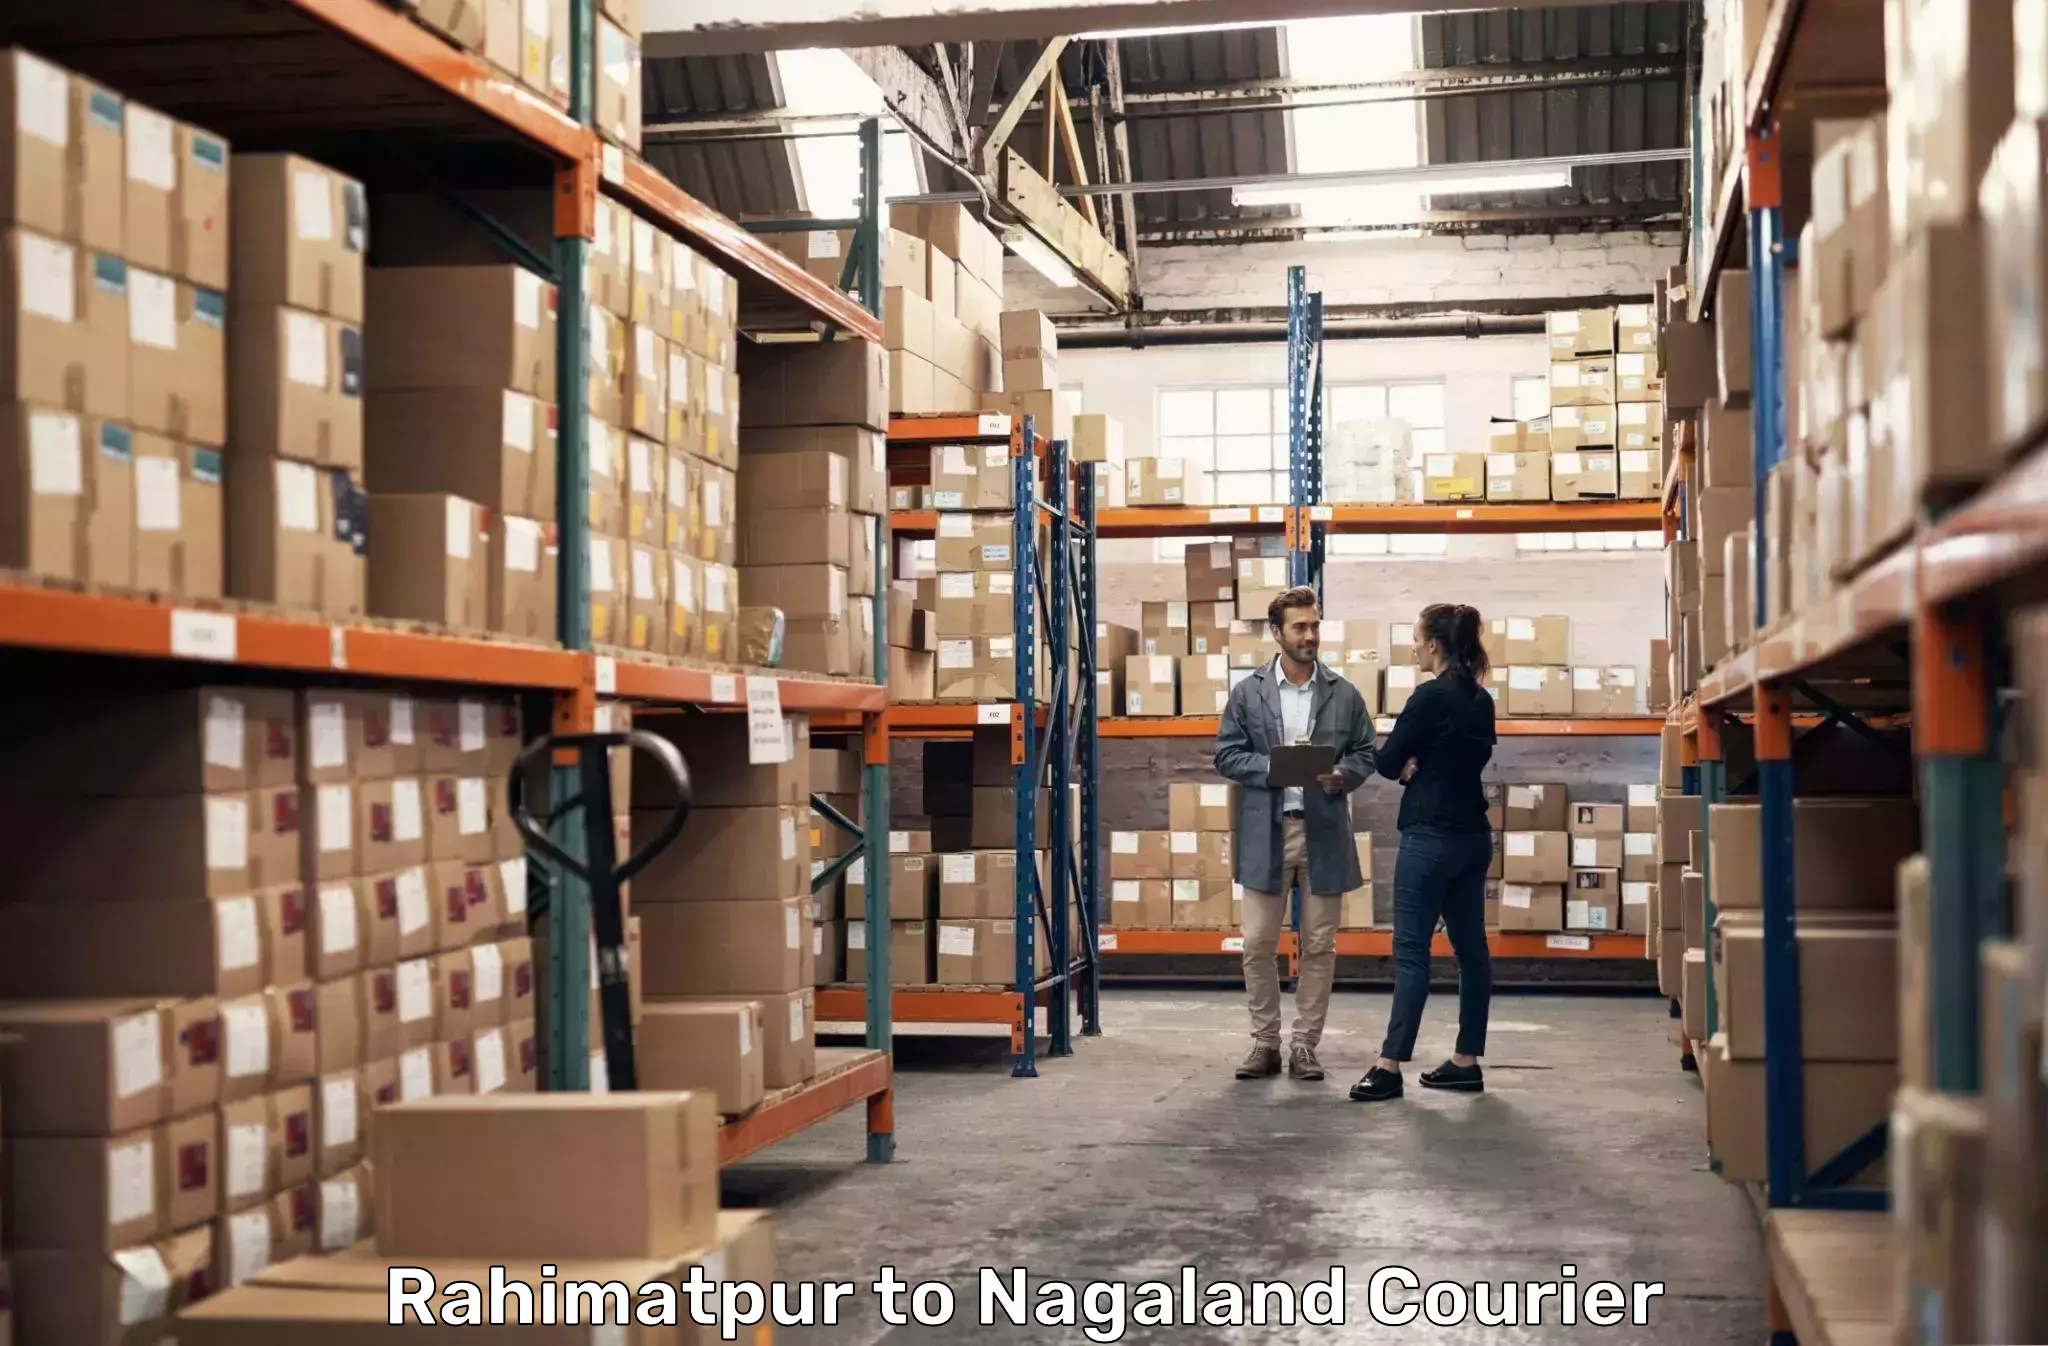 Multi-city courier Rahimatpur to Dimapur